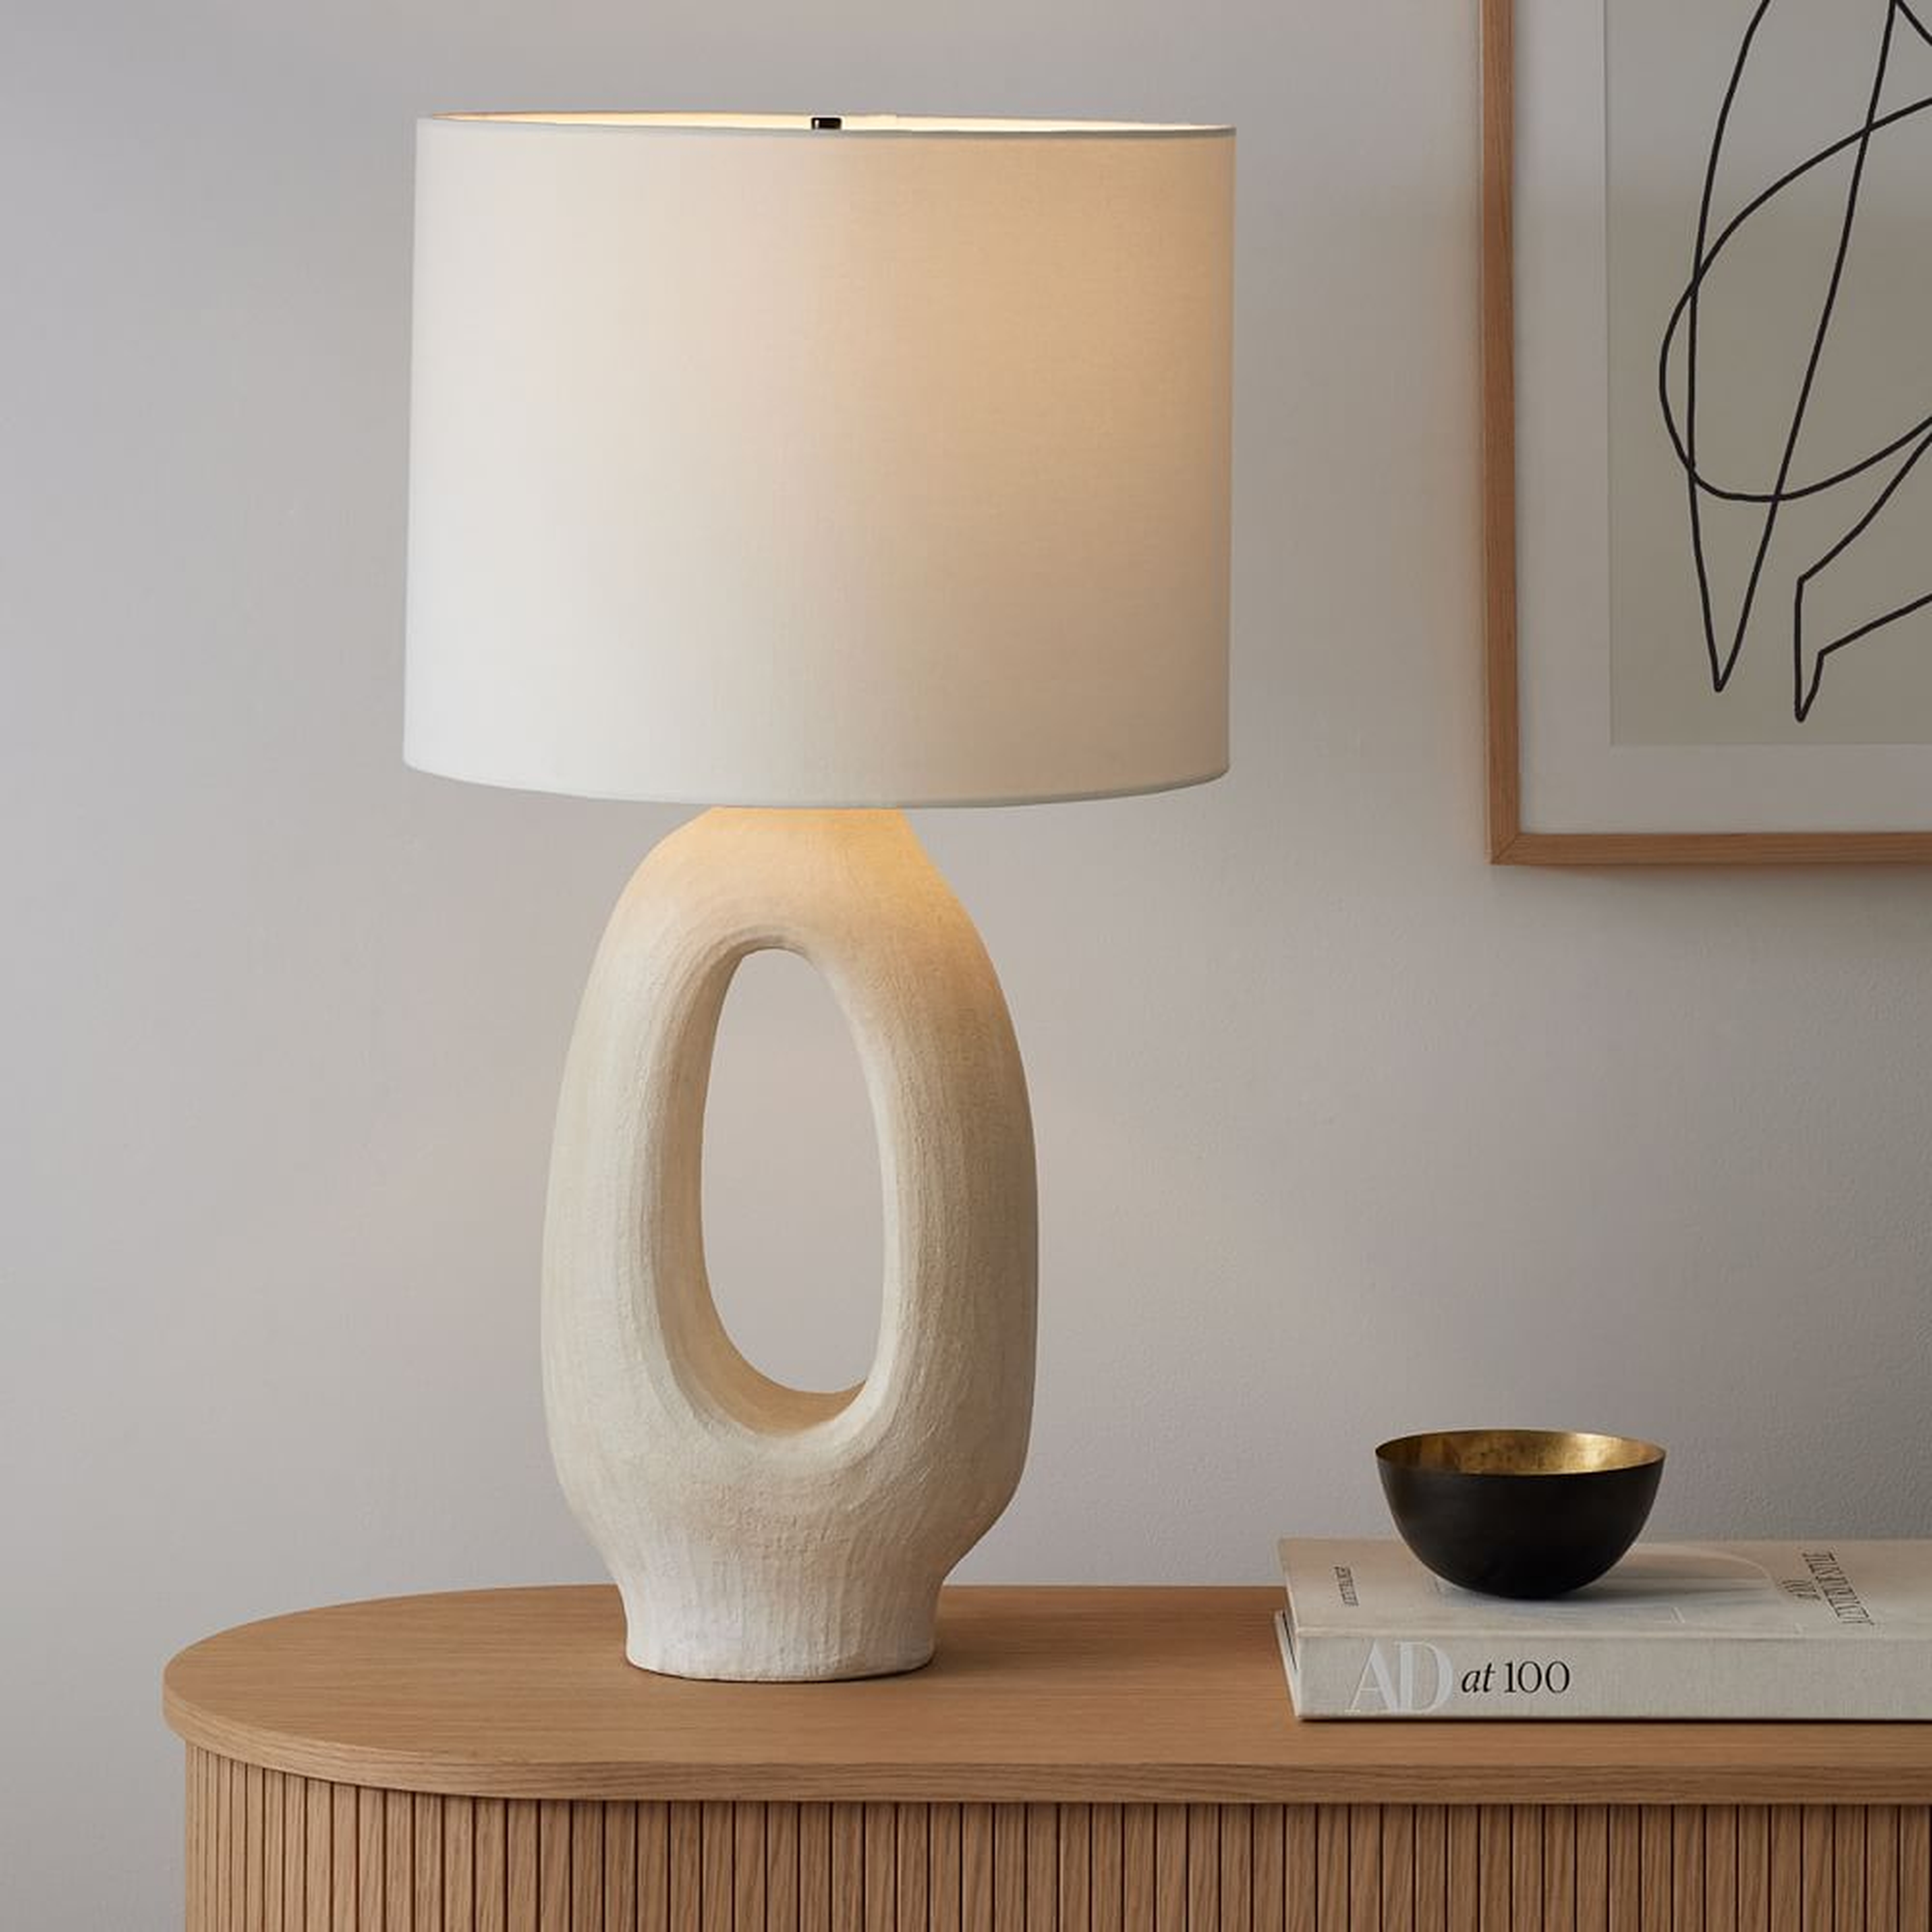 Chamber Ceramic Table Lamp, 30", White/White Linen, S/2 - West Elm